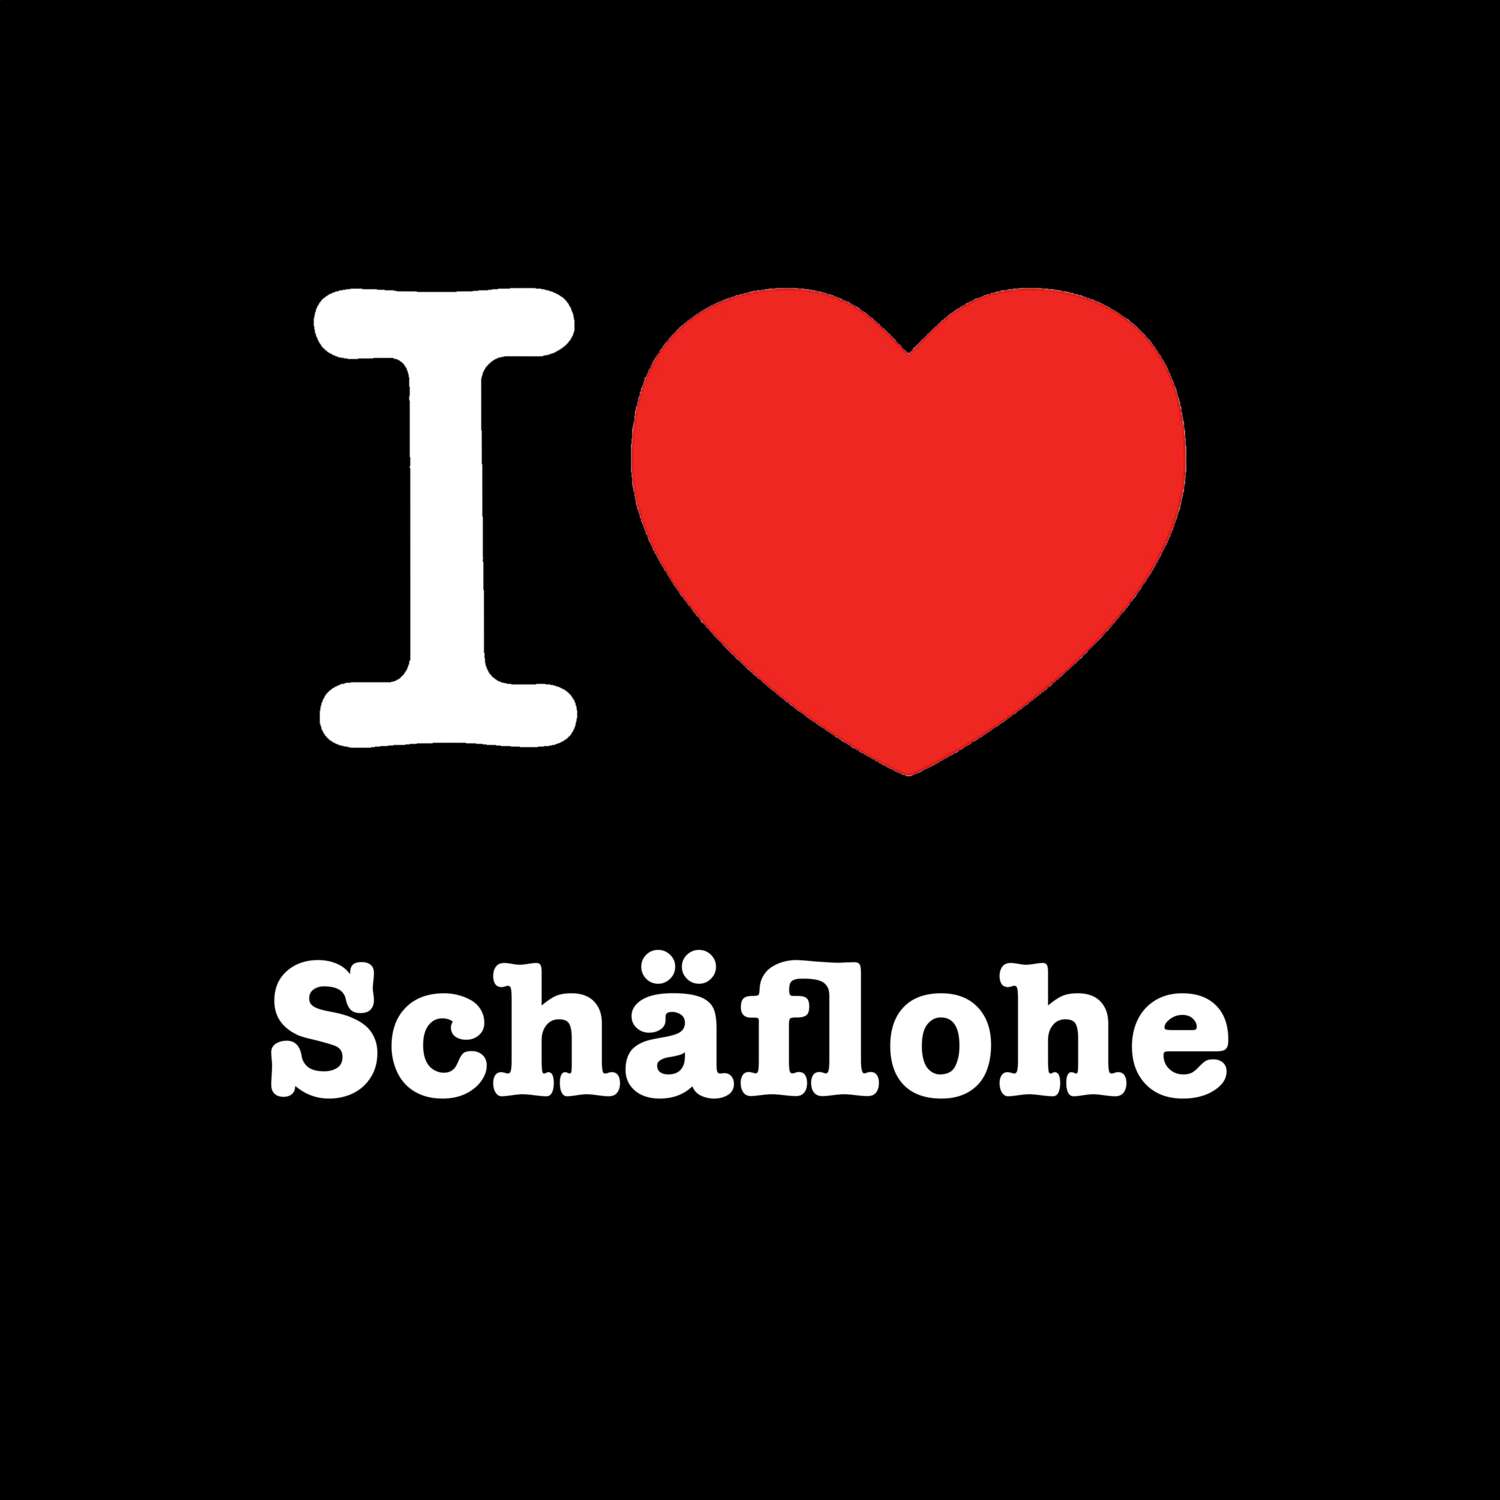 Schäflohe T-Shirt »I love«